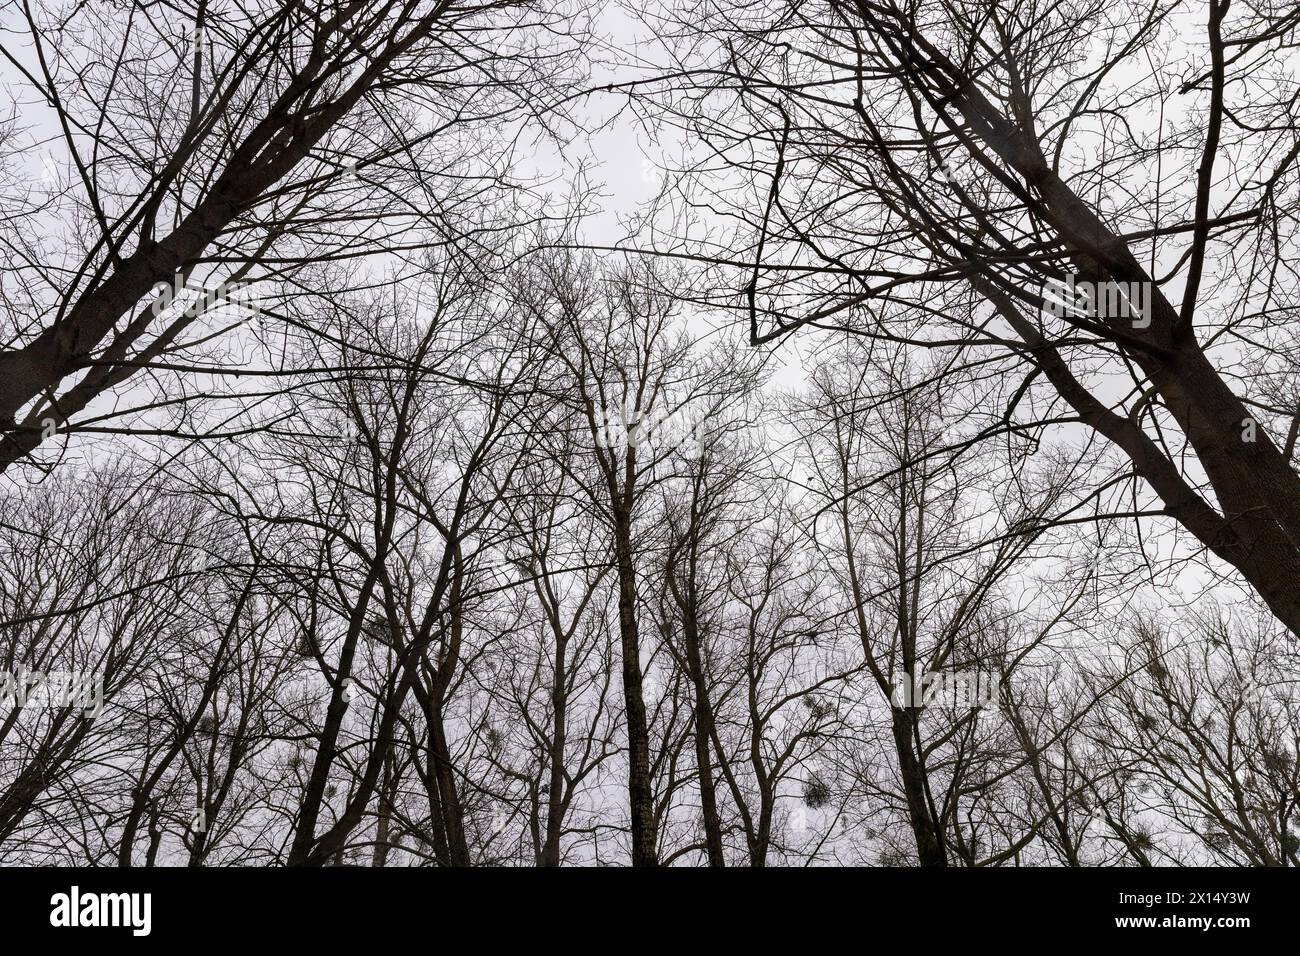 temps nuageux par temps venteux dans le parc d'hiver avec des érables , branches nues d'érables dans la saison d'hiver dans le parc Banque D'Images